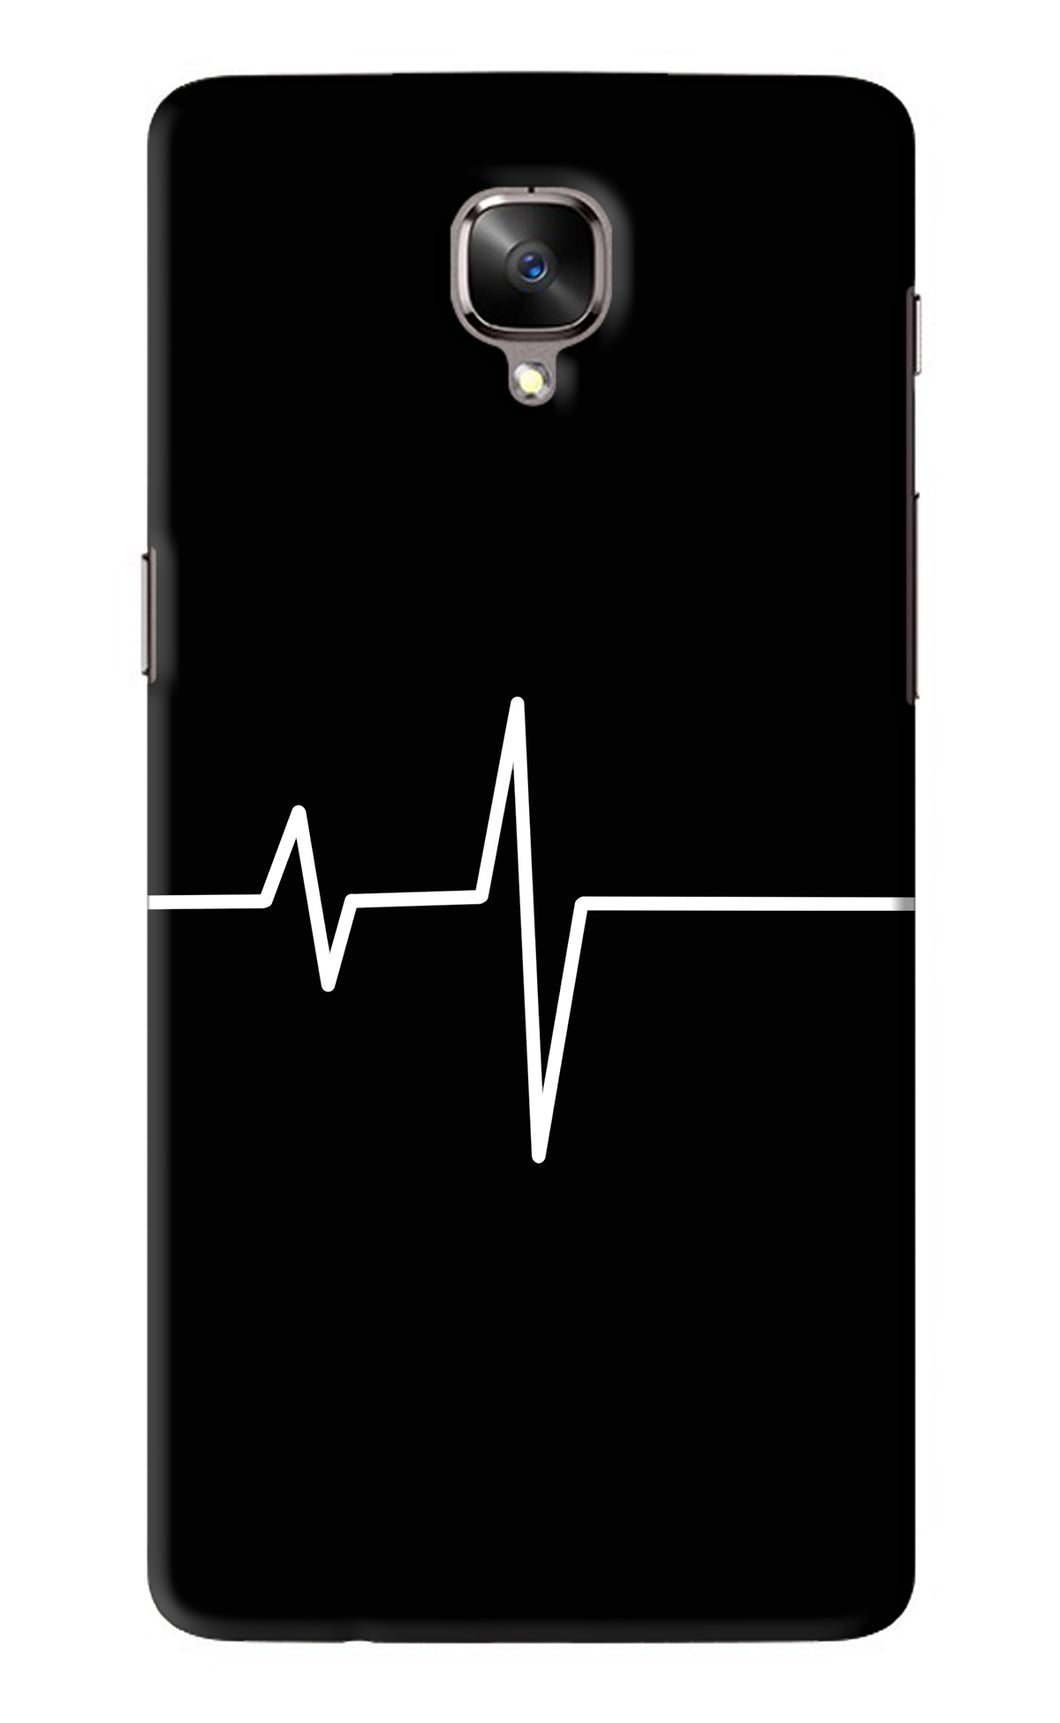 Heart Beats OnePlus 3T Back Skin Wrap